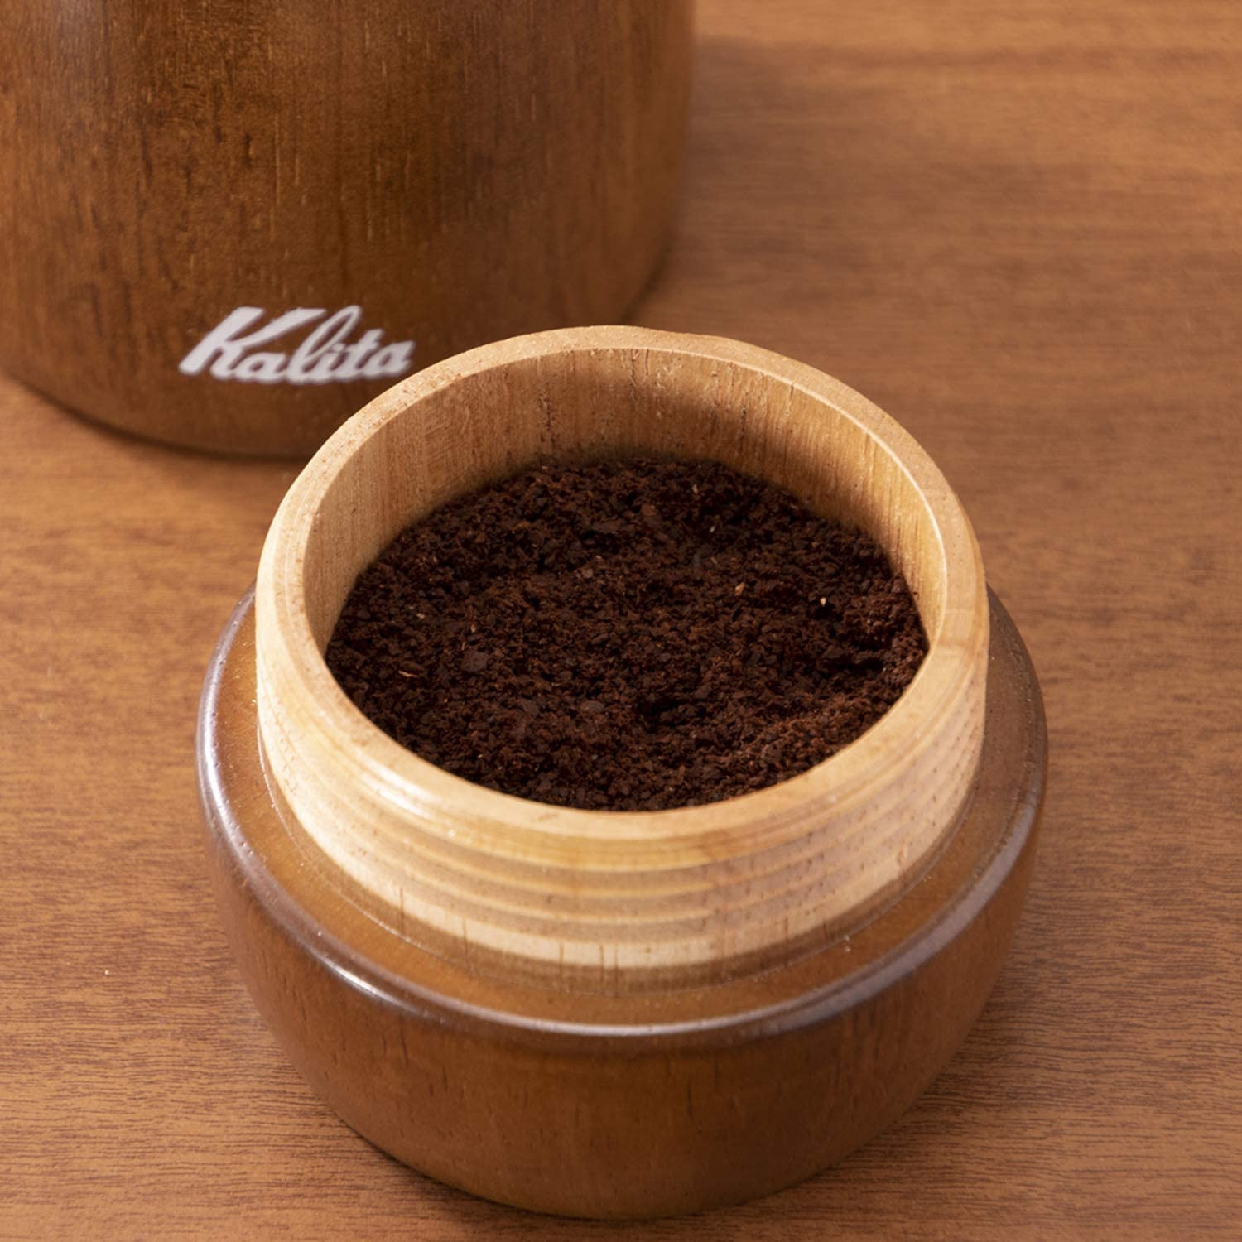 Kalita(カリタ) コーヒーミル KH-9の商品画像5 